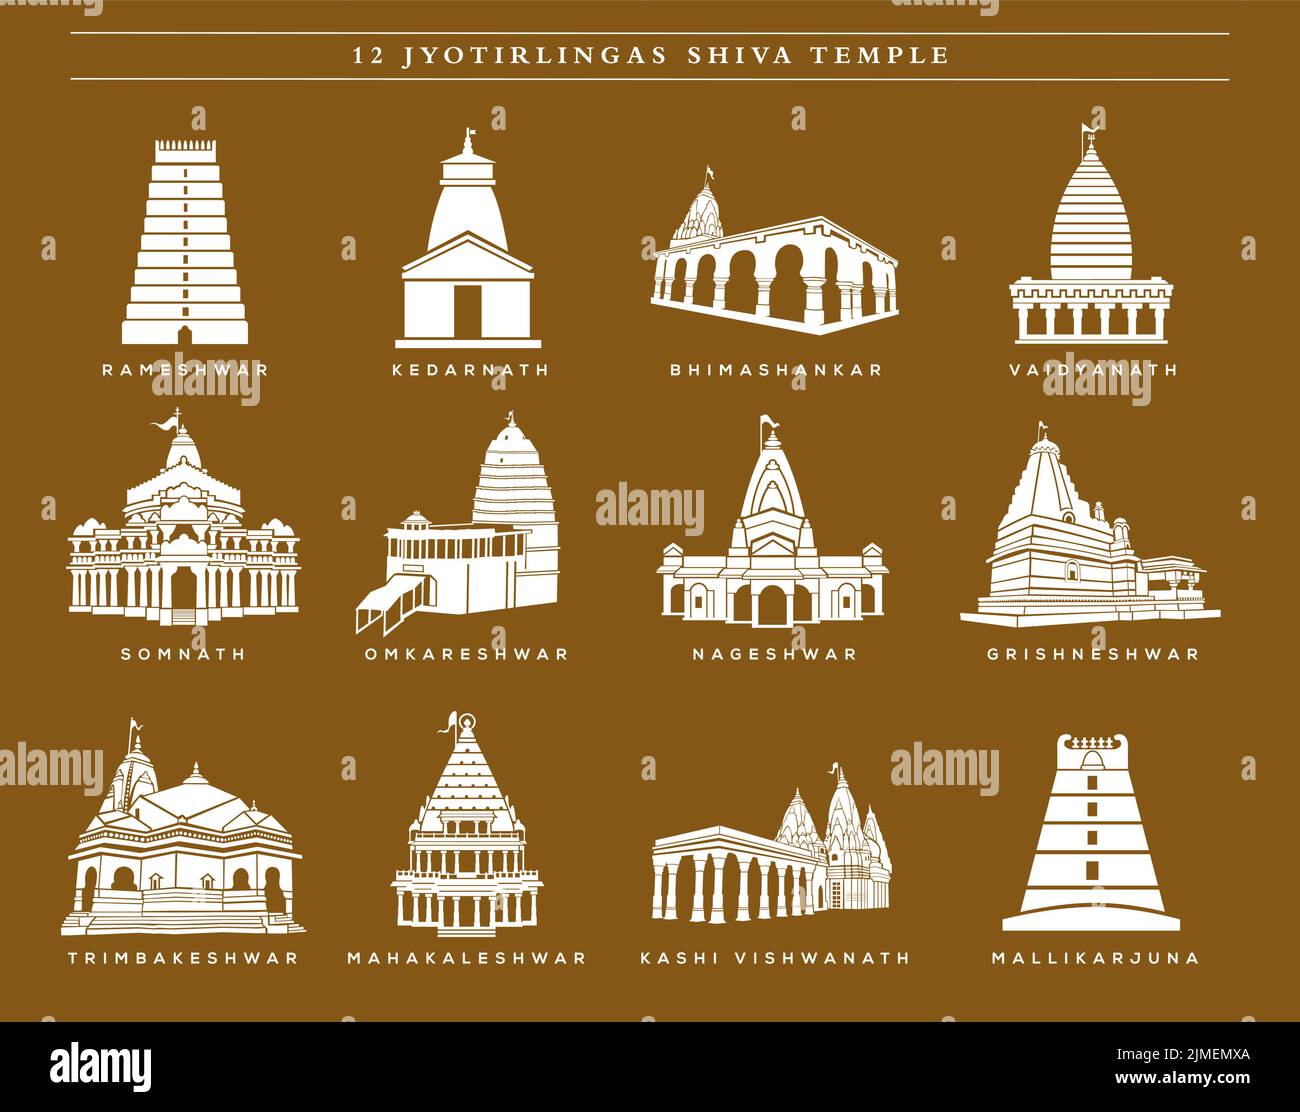 12 icona vettoriale dei Templi di Lord Shiva. 12 tempio di jyotirlinga. Illustrazione delle icone dei templi di Shiva. Illustrazione Vettoriale